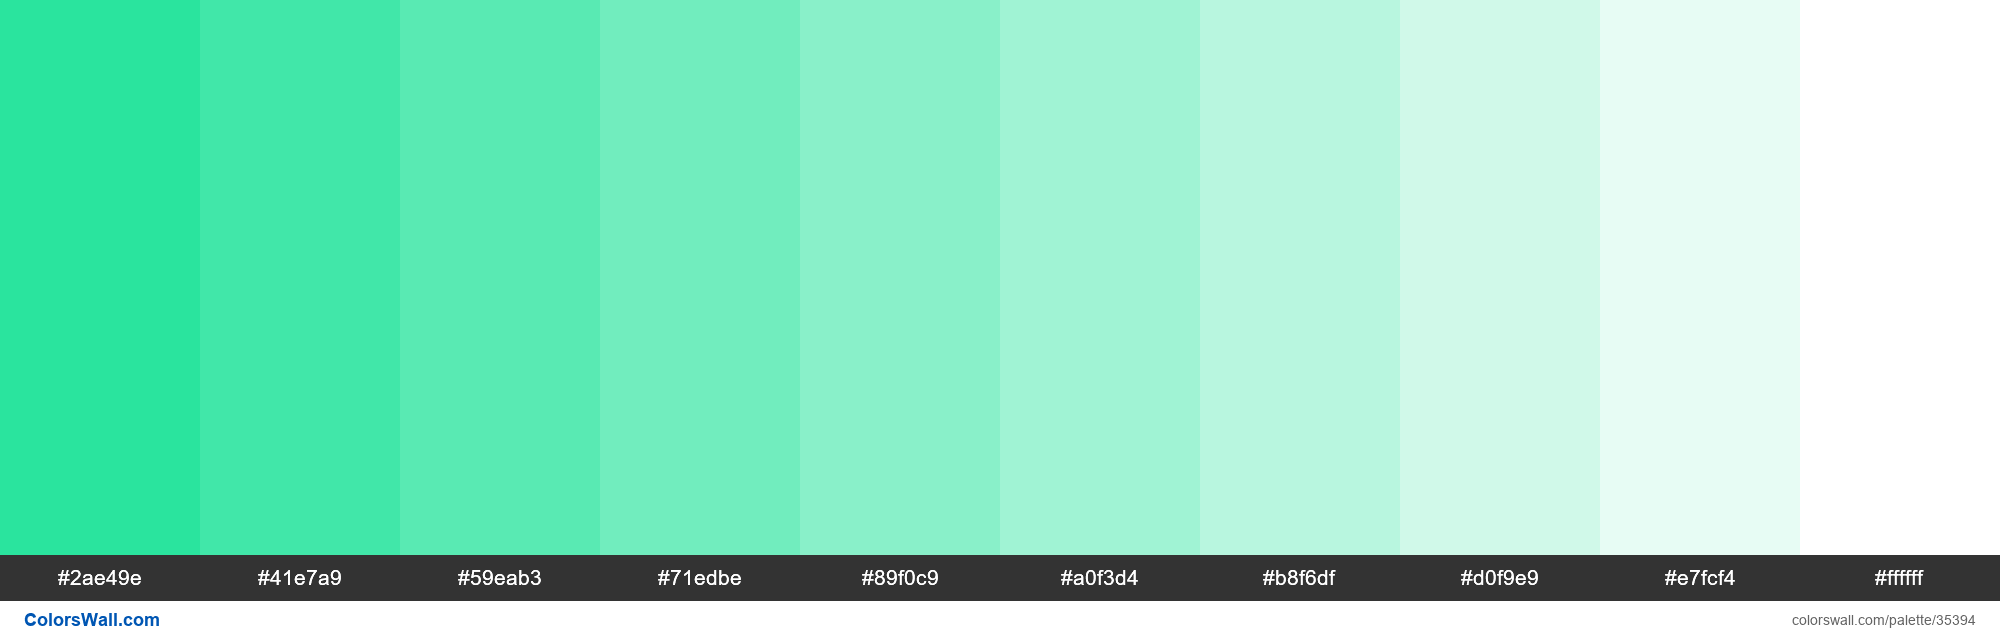 Aqua Green Color Palette | estudioespositoymiguel.com.ar